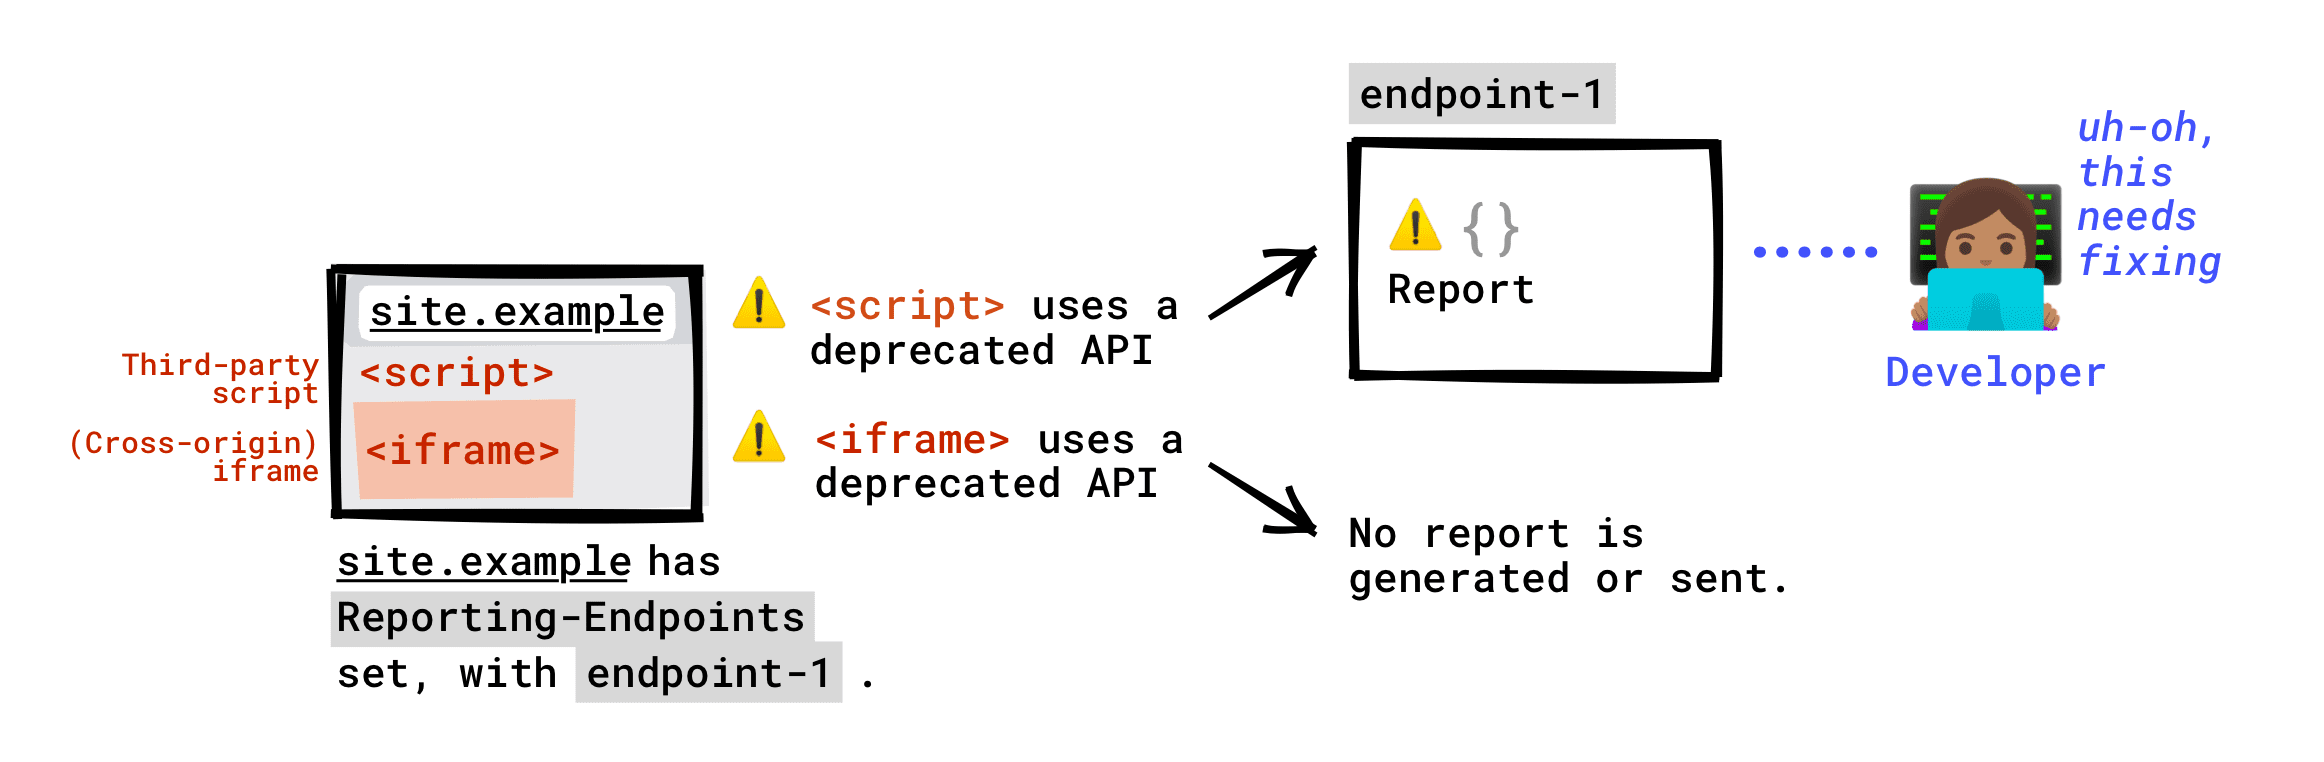 Wenn der Header „Reporting-Endpunkte“ auf Ihrer Seite eingerichtet ist, wird an Ihren Endpunkt gemeldet, dass eingestellte APIs, die von Drittanbieter-Skripts auf Ihrer Seite aufgerufen werden, gemeldet werden. Ein veraltetes API, das von einem in Ihre Seite eingebetteten iFrame aufgerufen wird, wird nicht an Ihren Endpunkt gemeldet. Ein Einstellungsbericht wird nur generiert, wenn der iFrame-Server Reporting-Endpunkte eingerichtet hat. Dieser Bericht wird an den Endpunkt gesendet, den der iFrame-Server eingerichtet hat.